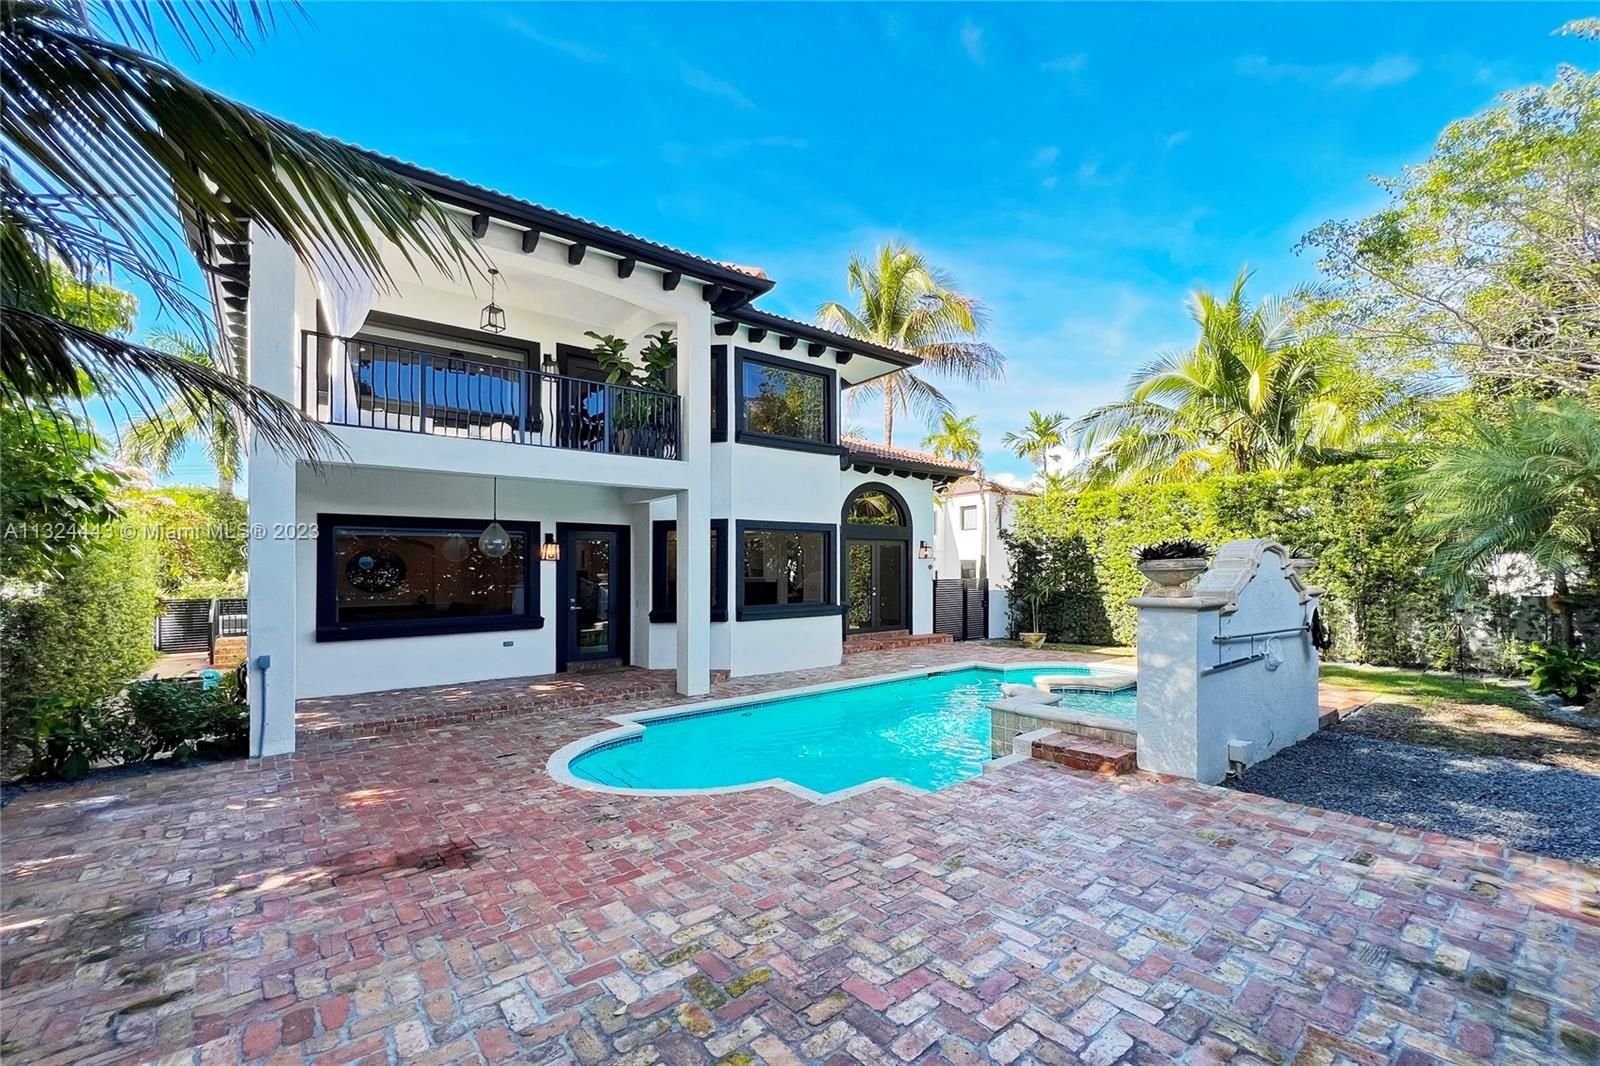 Real estate property located at 6045 La Gorce Dr, Miami-Dade County, Miami Beach, FL